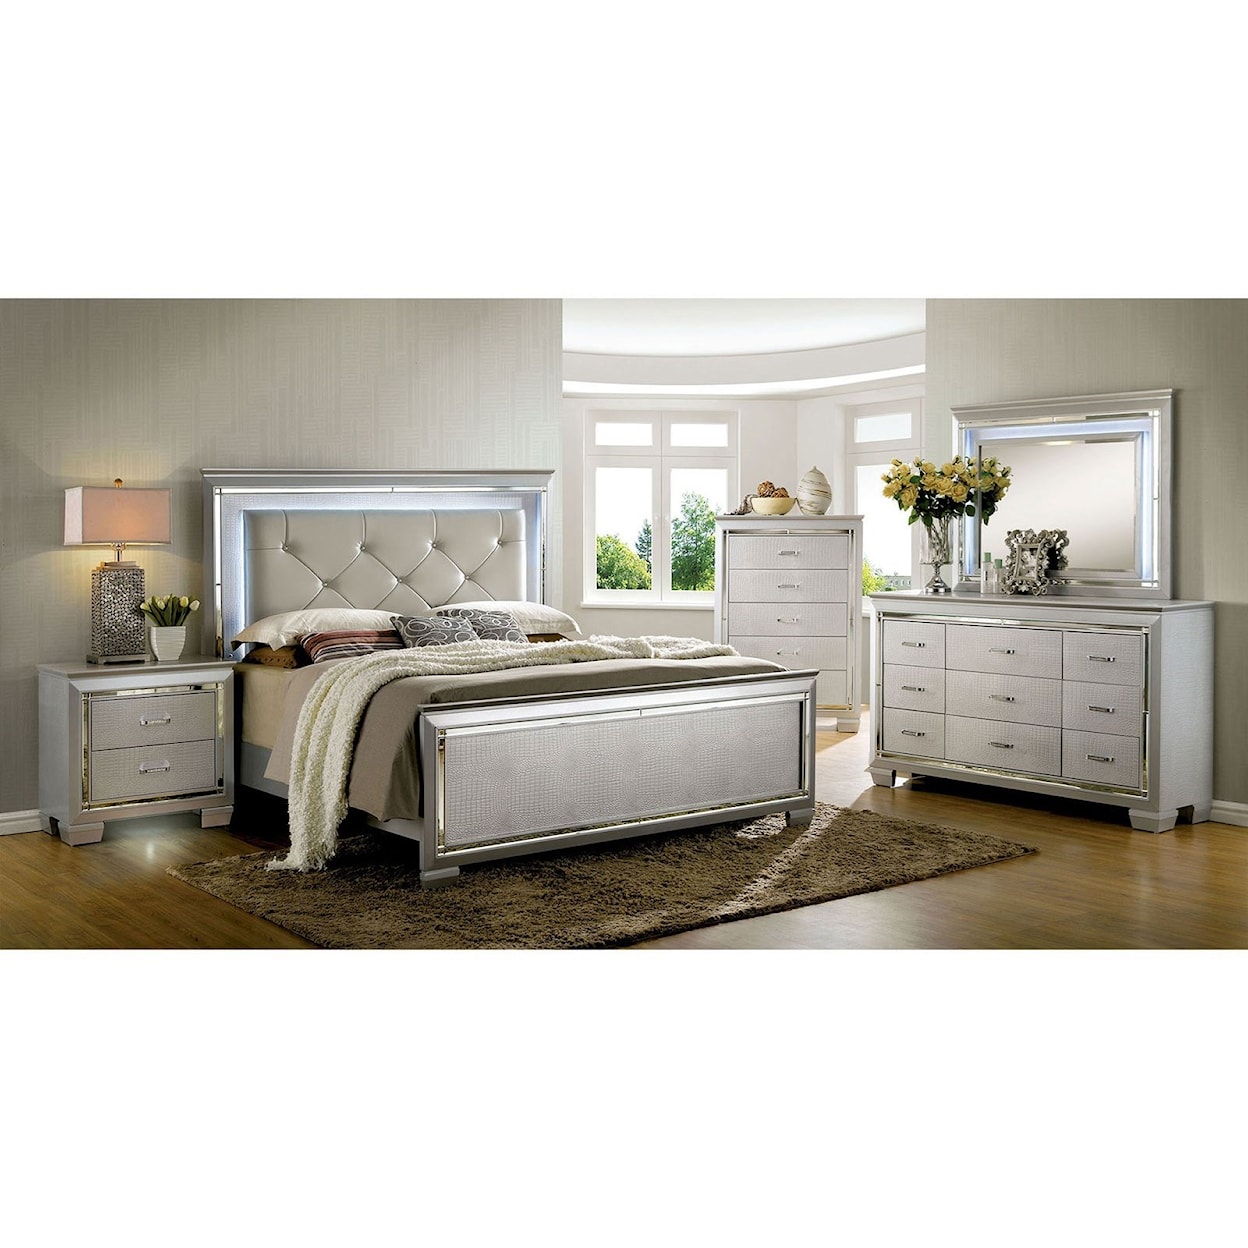 Furniture of America - FOA Bellanova Dresser + Mirror Set